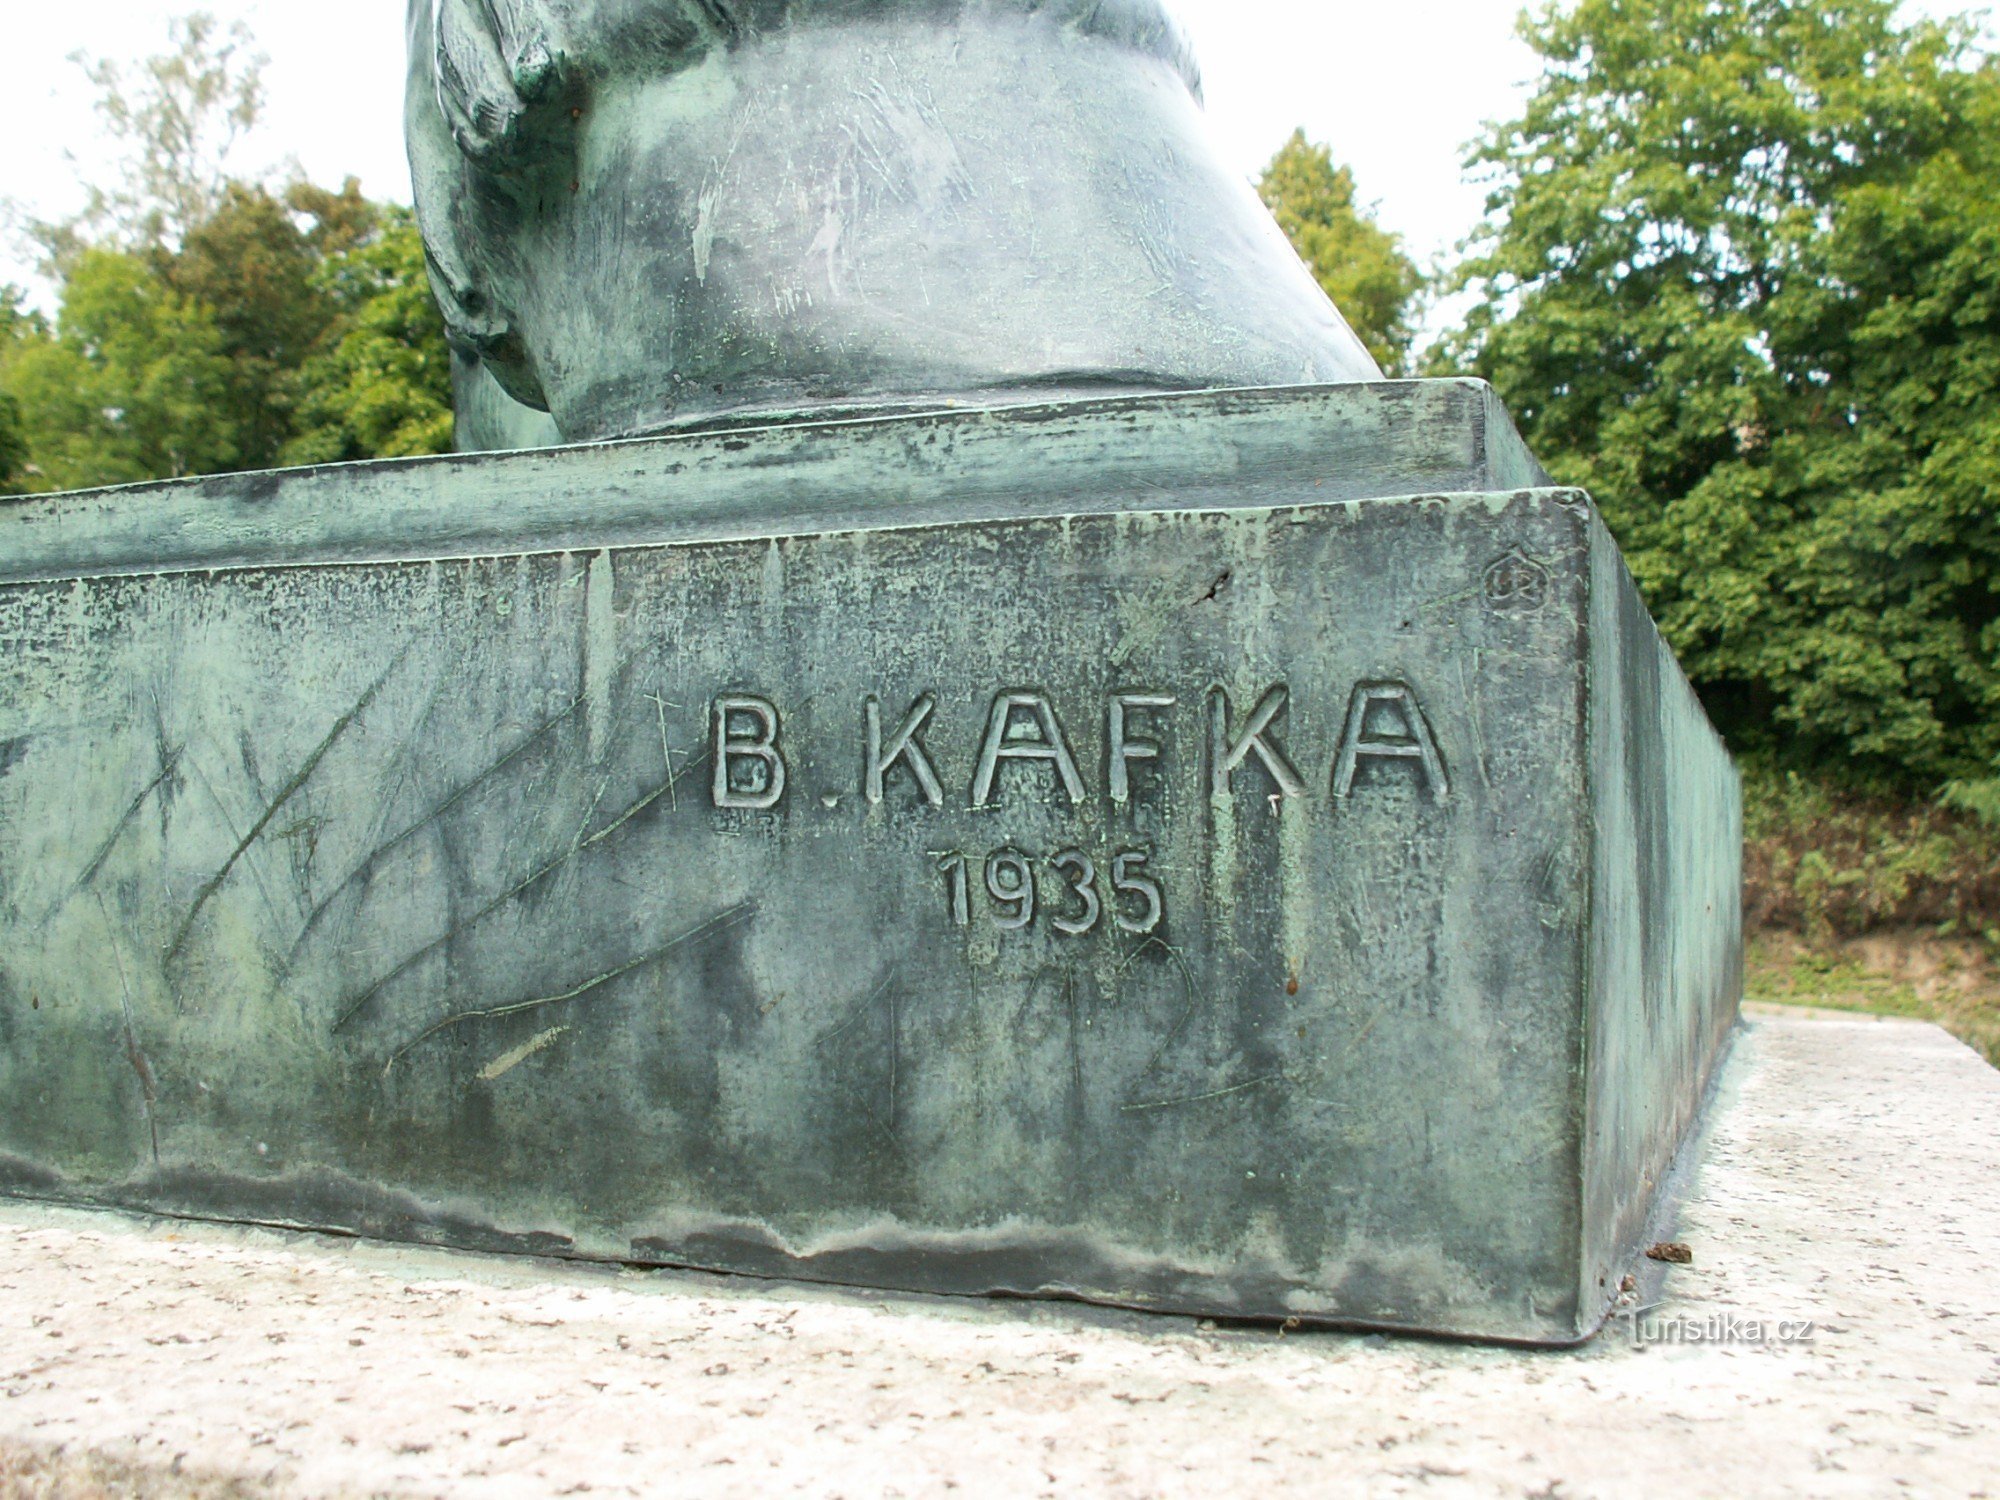 Detalje af statuen med navnet på dens forfatter